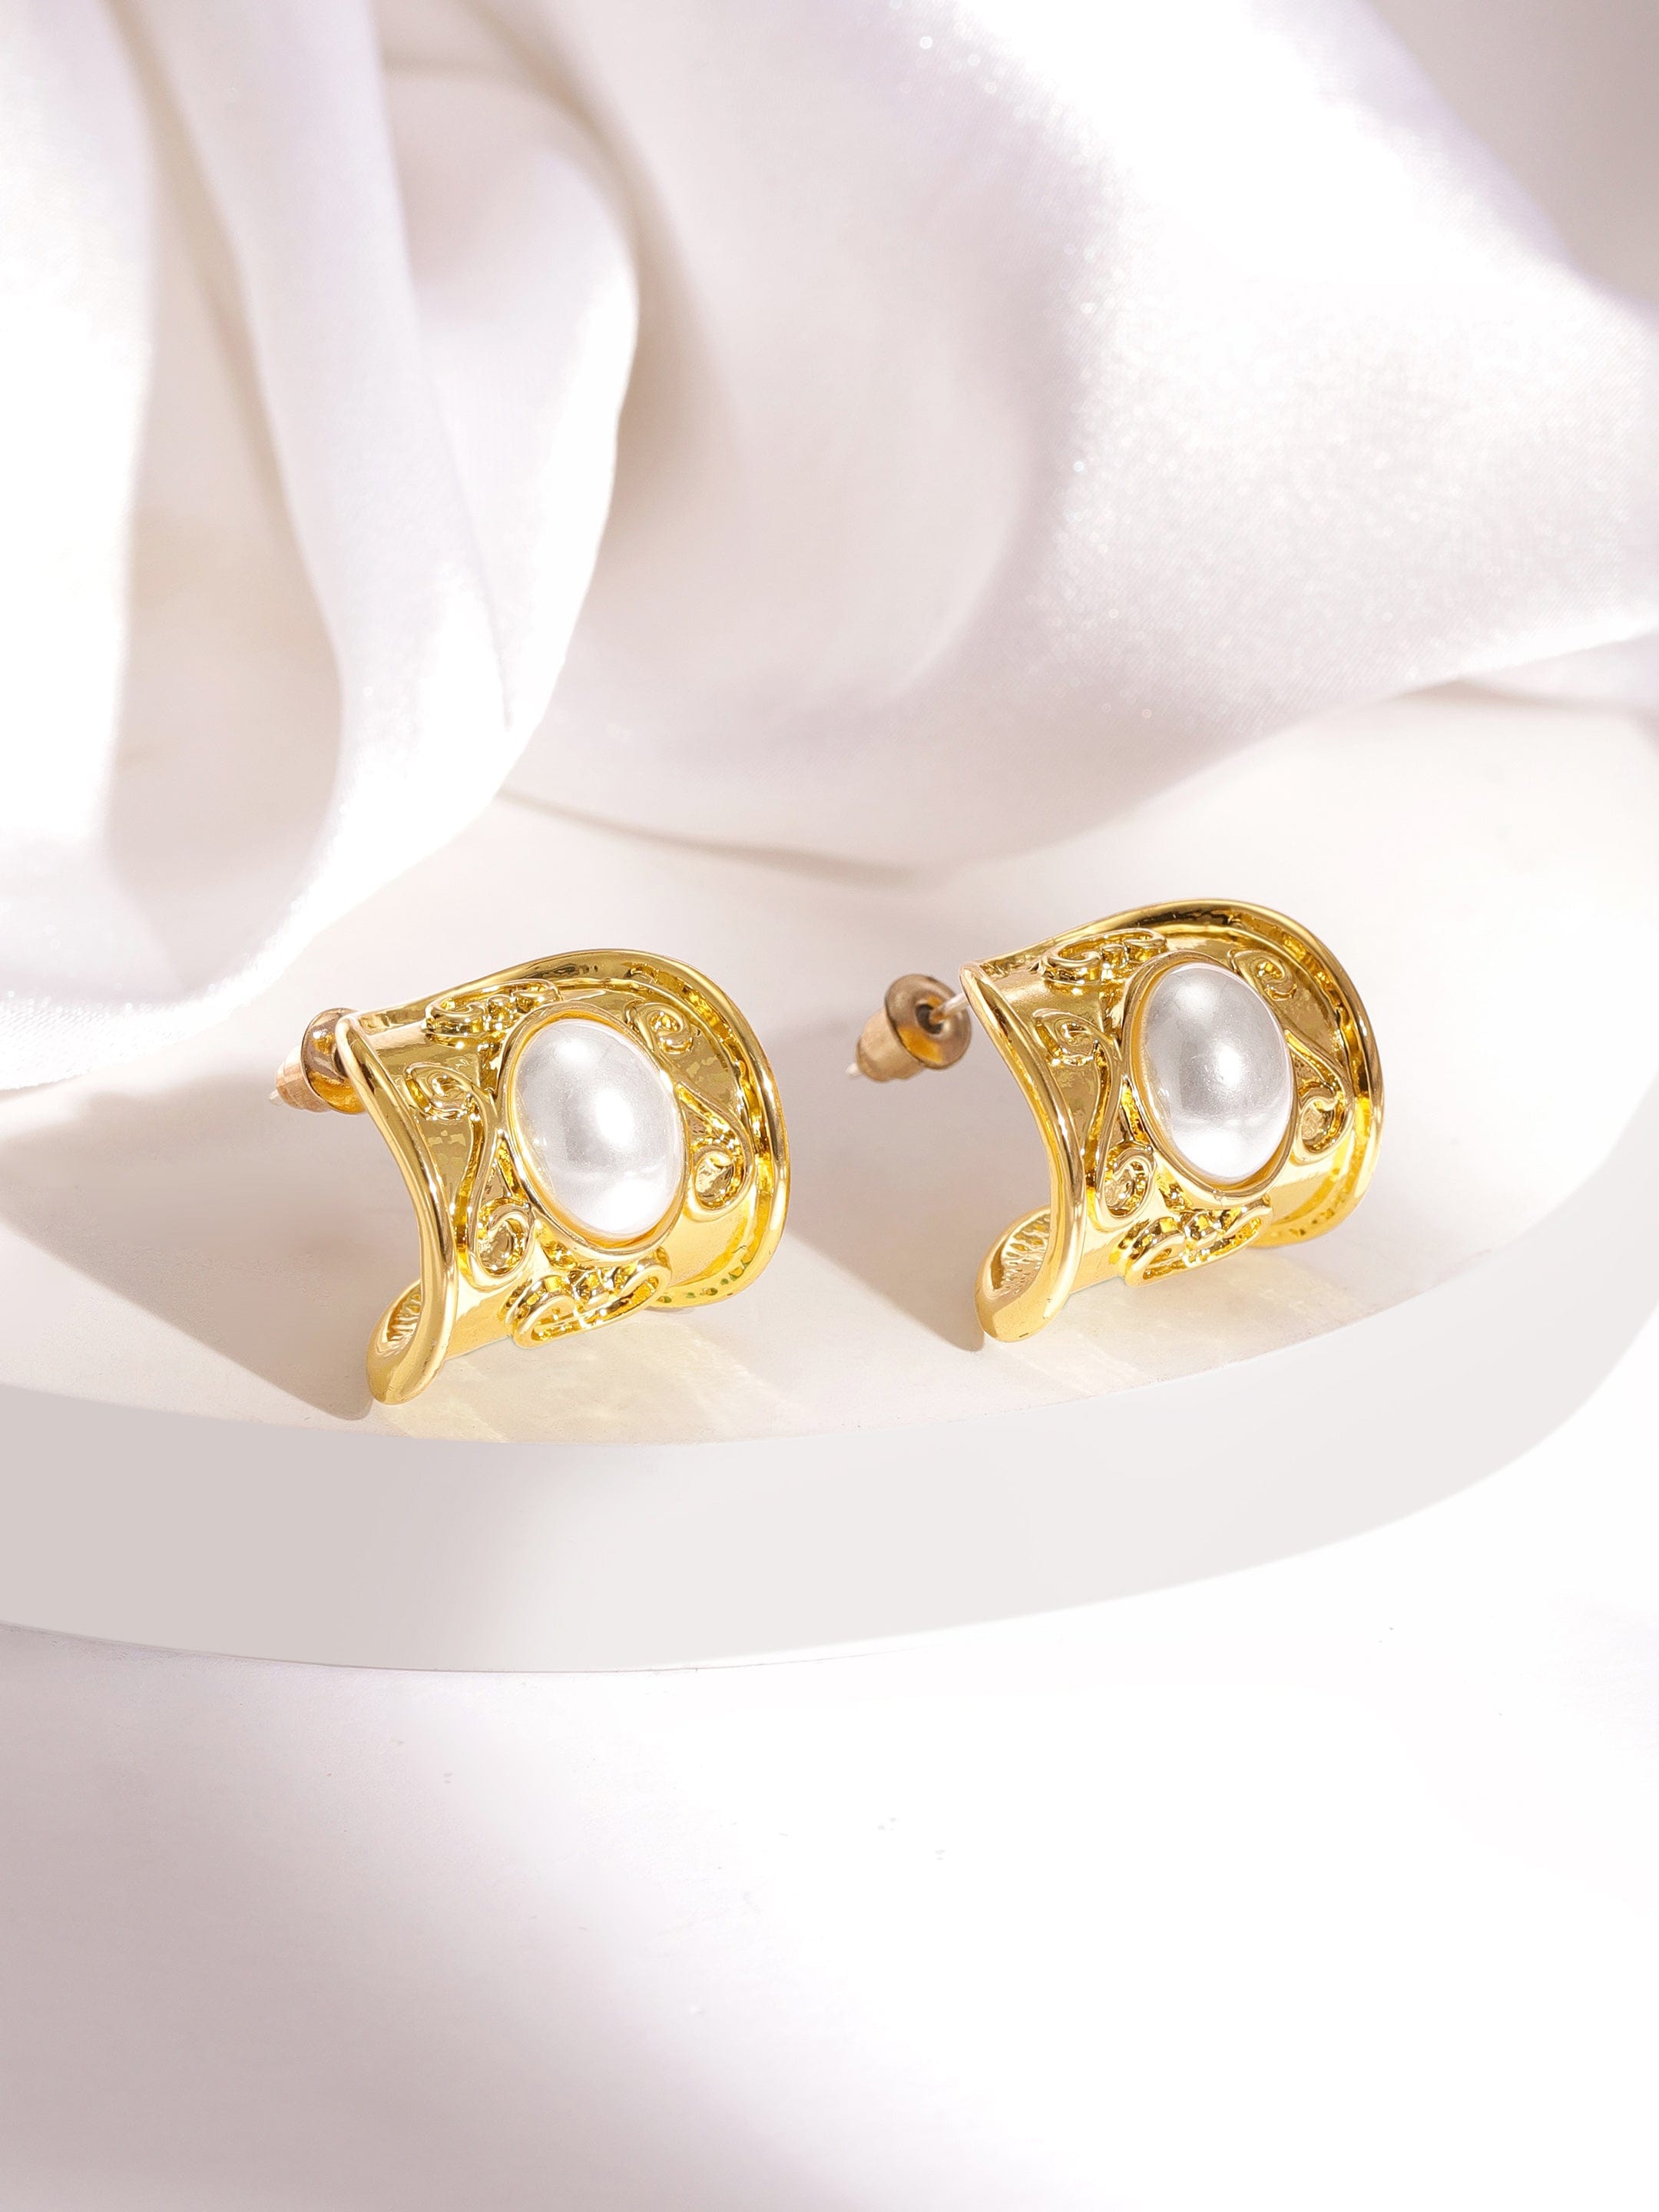 rubans voguish gold plated oval half hoop earrings earrings 35665436410030